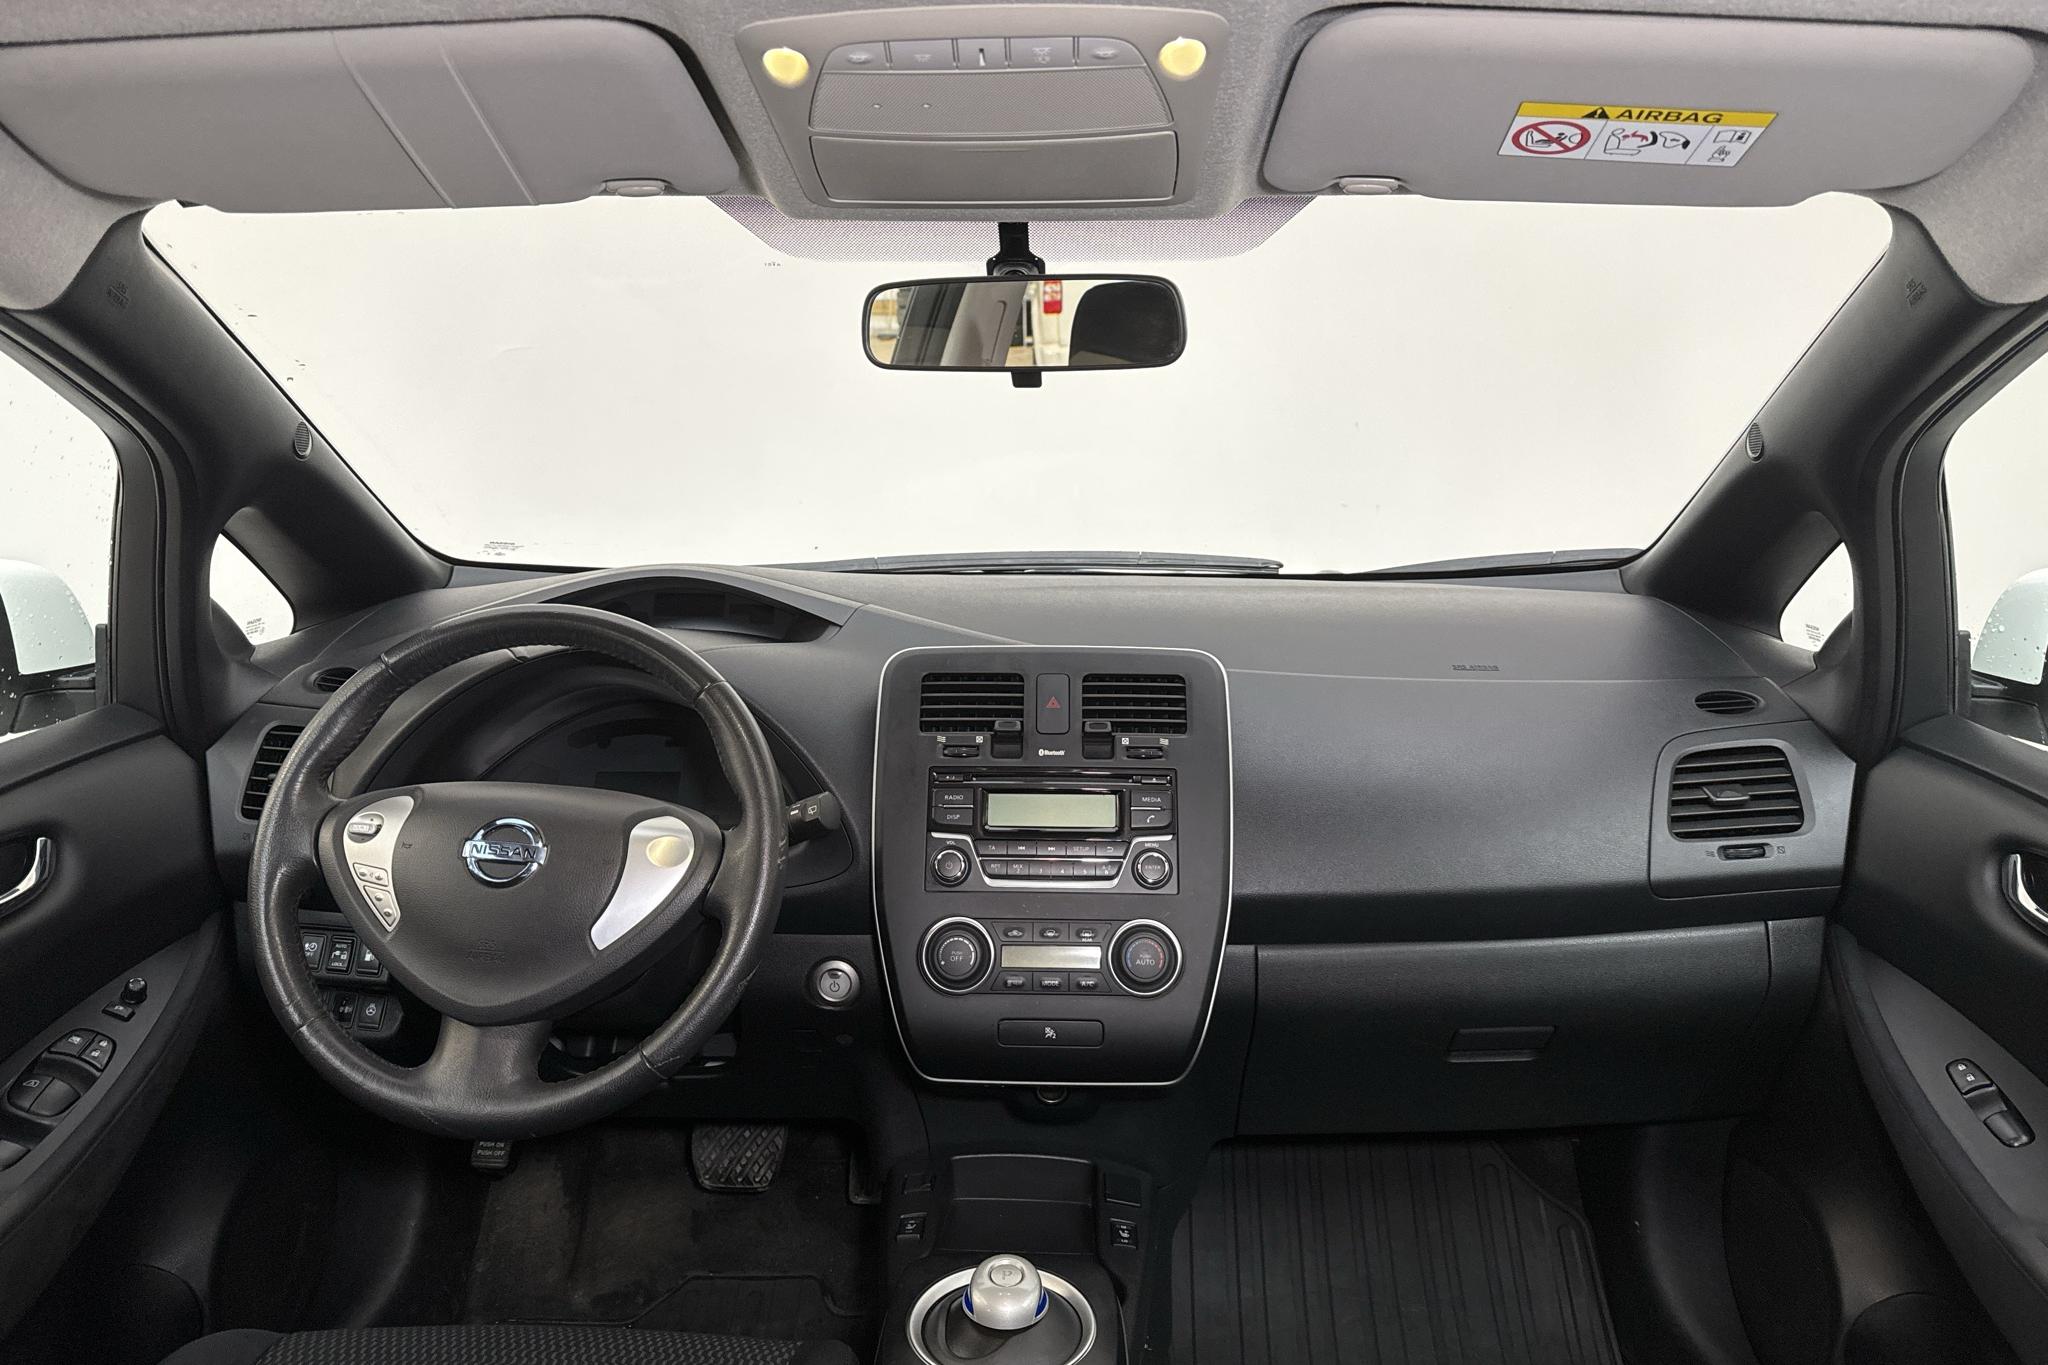 Nissan LEAF 5dr (109hk) - 33 890 km - Automatyczna - biały - 2016